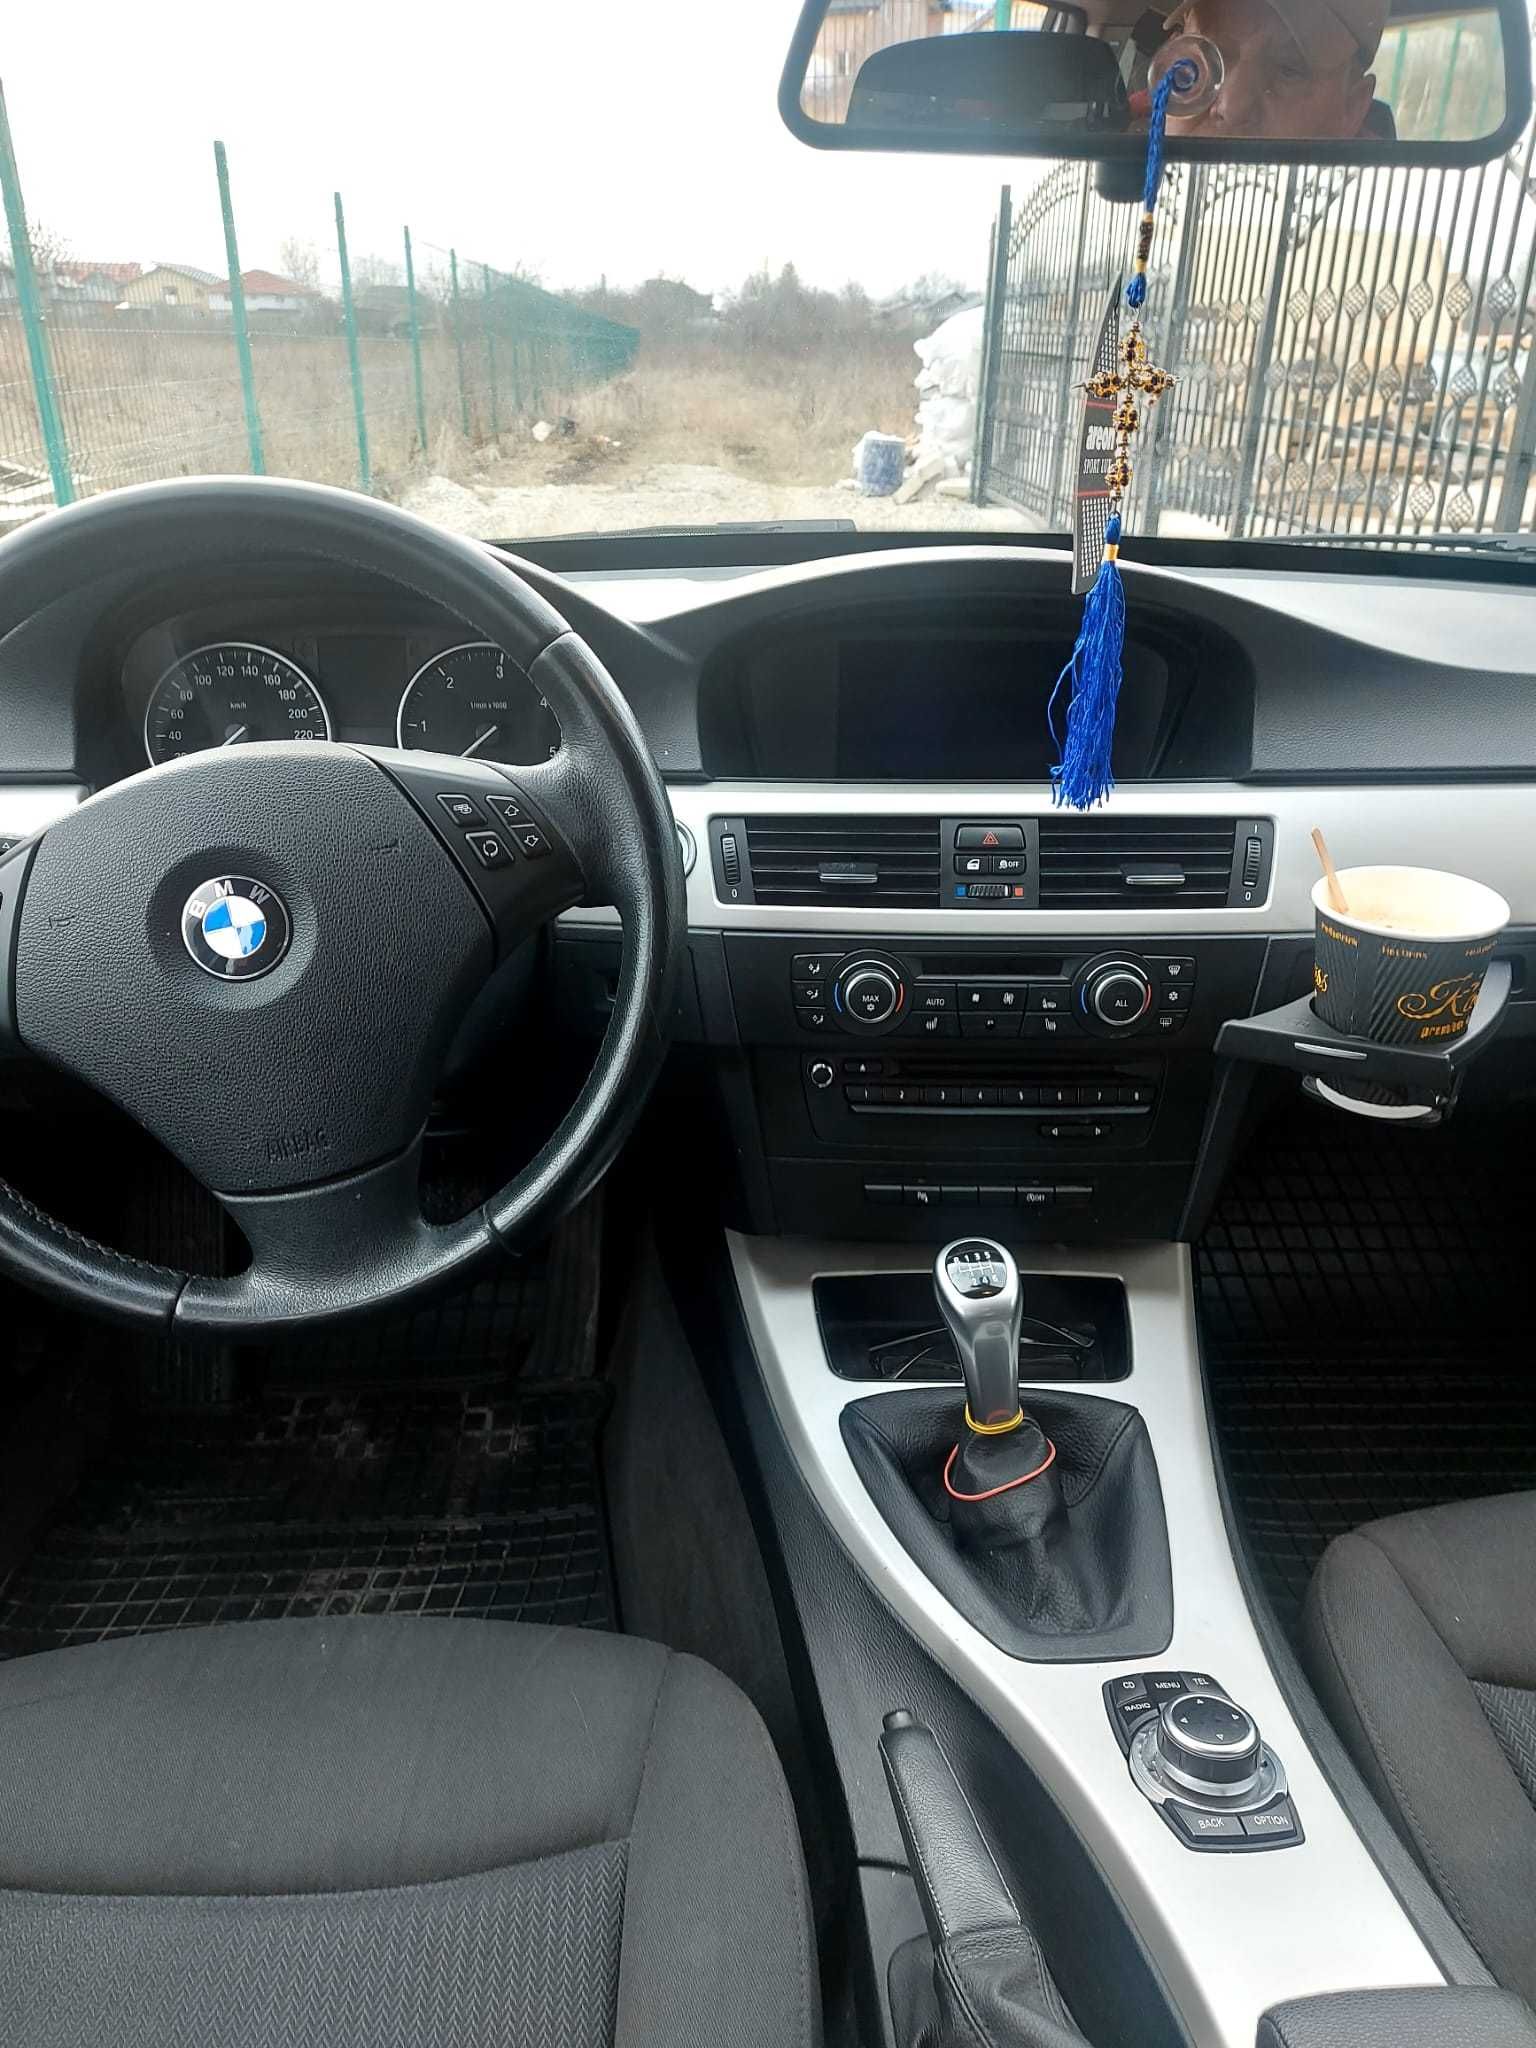 BMW 318D An 2012 Euro 5